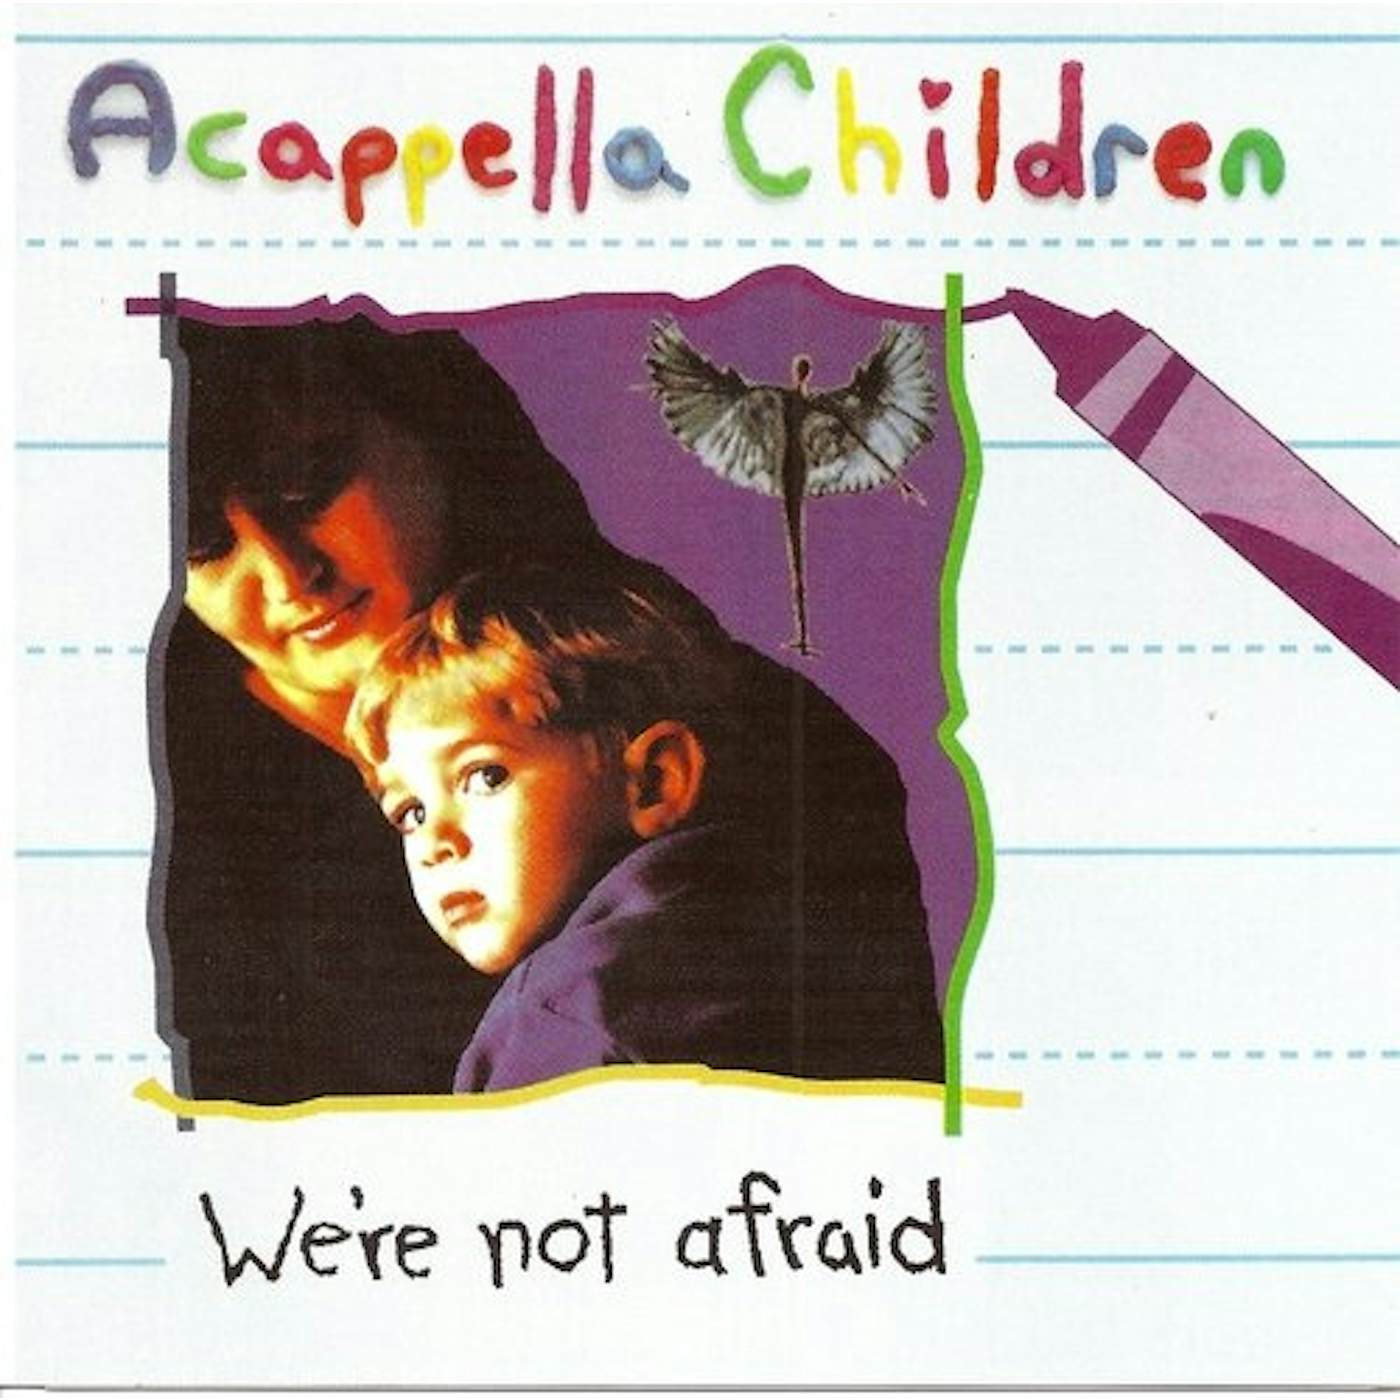 Acappella WE'RE NOT AFRAID CD